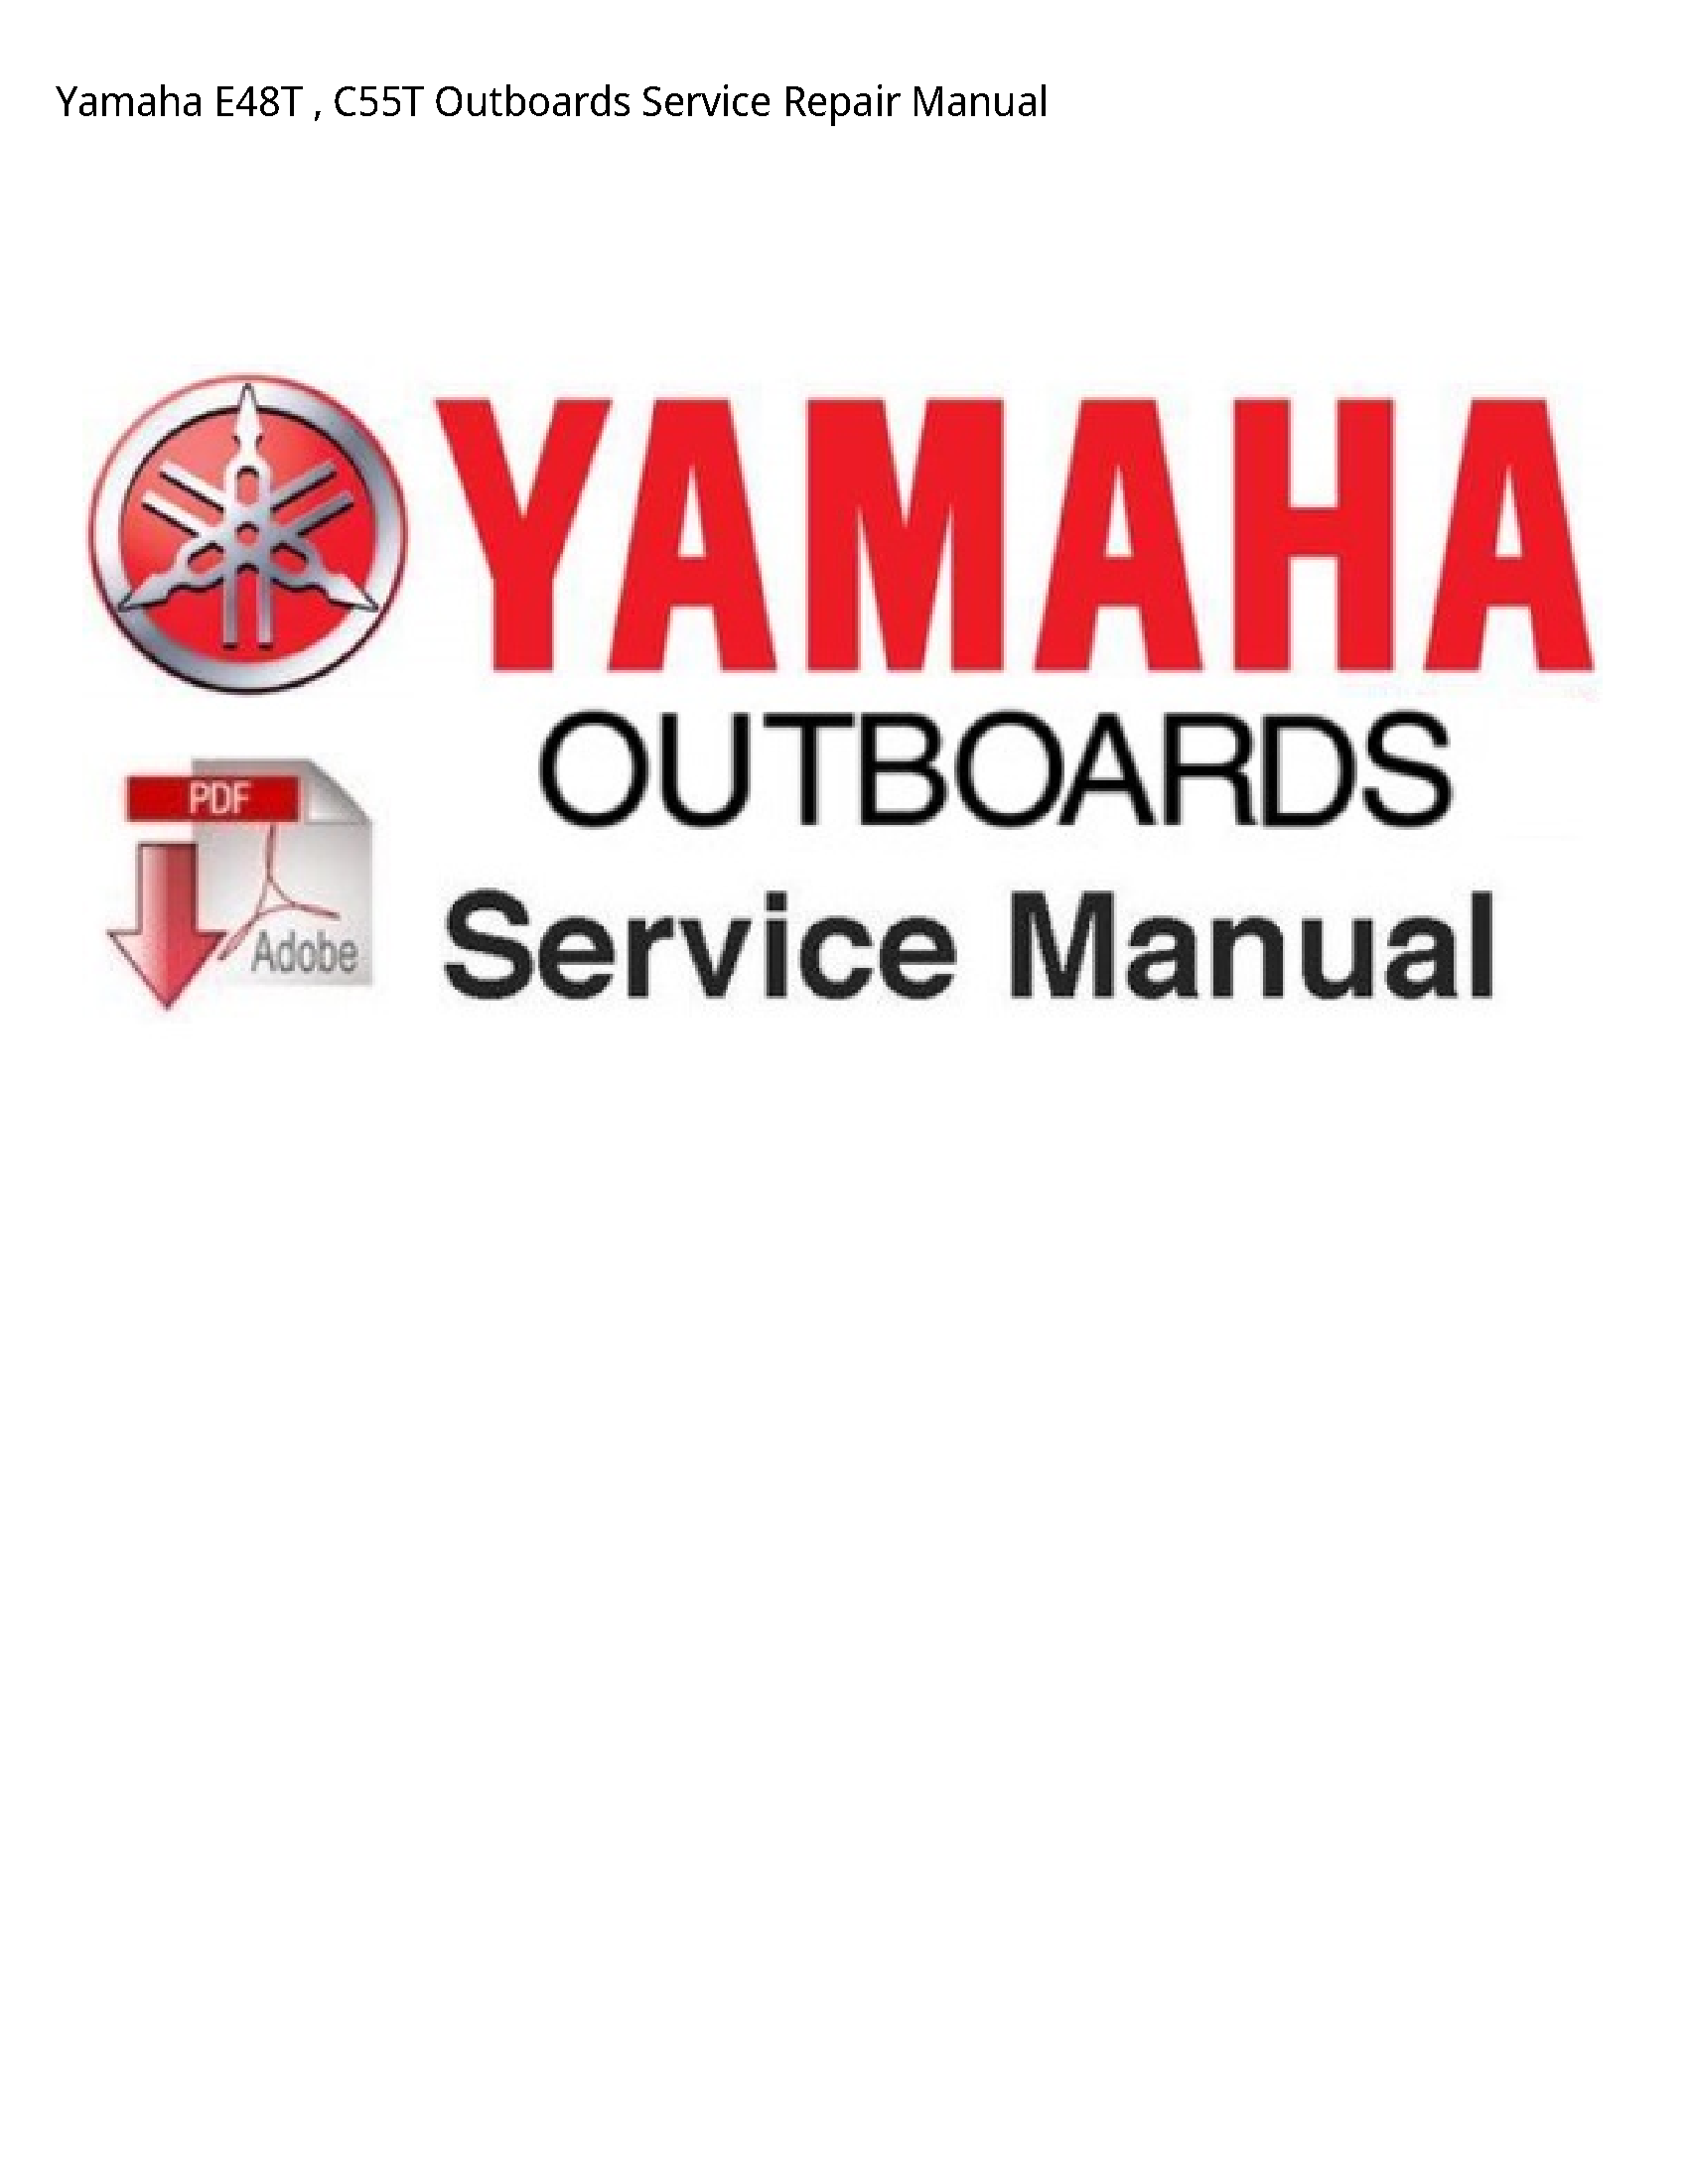 Yamaha E48T Outboards manual